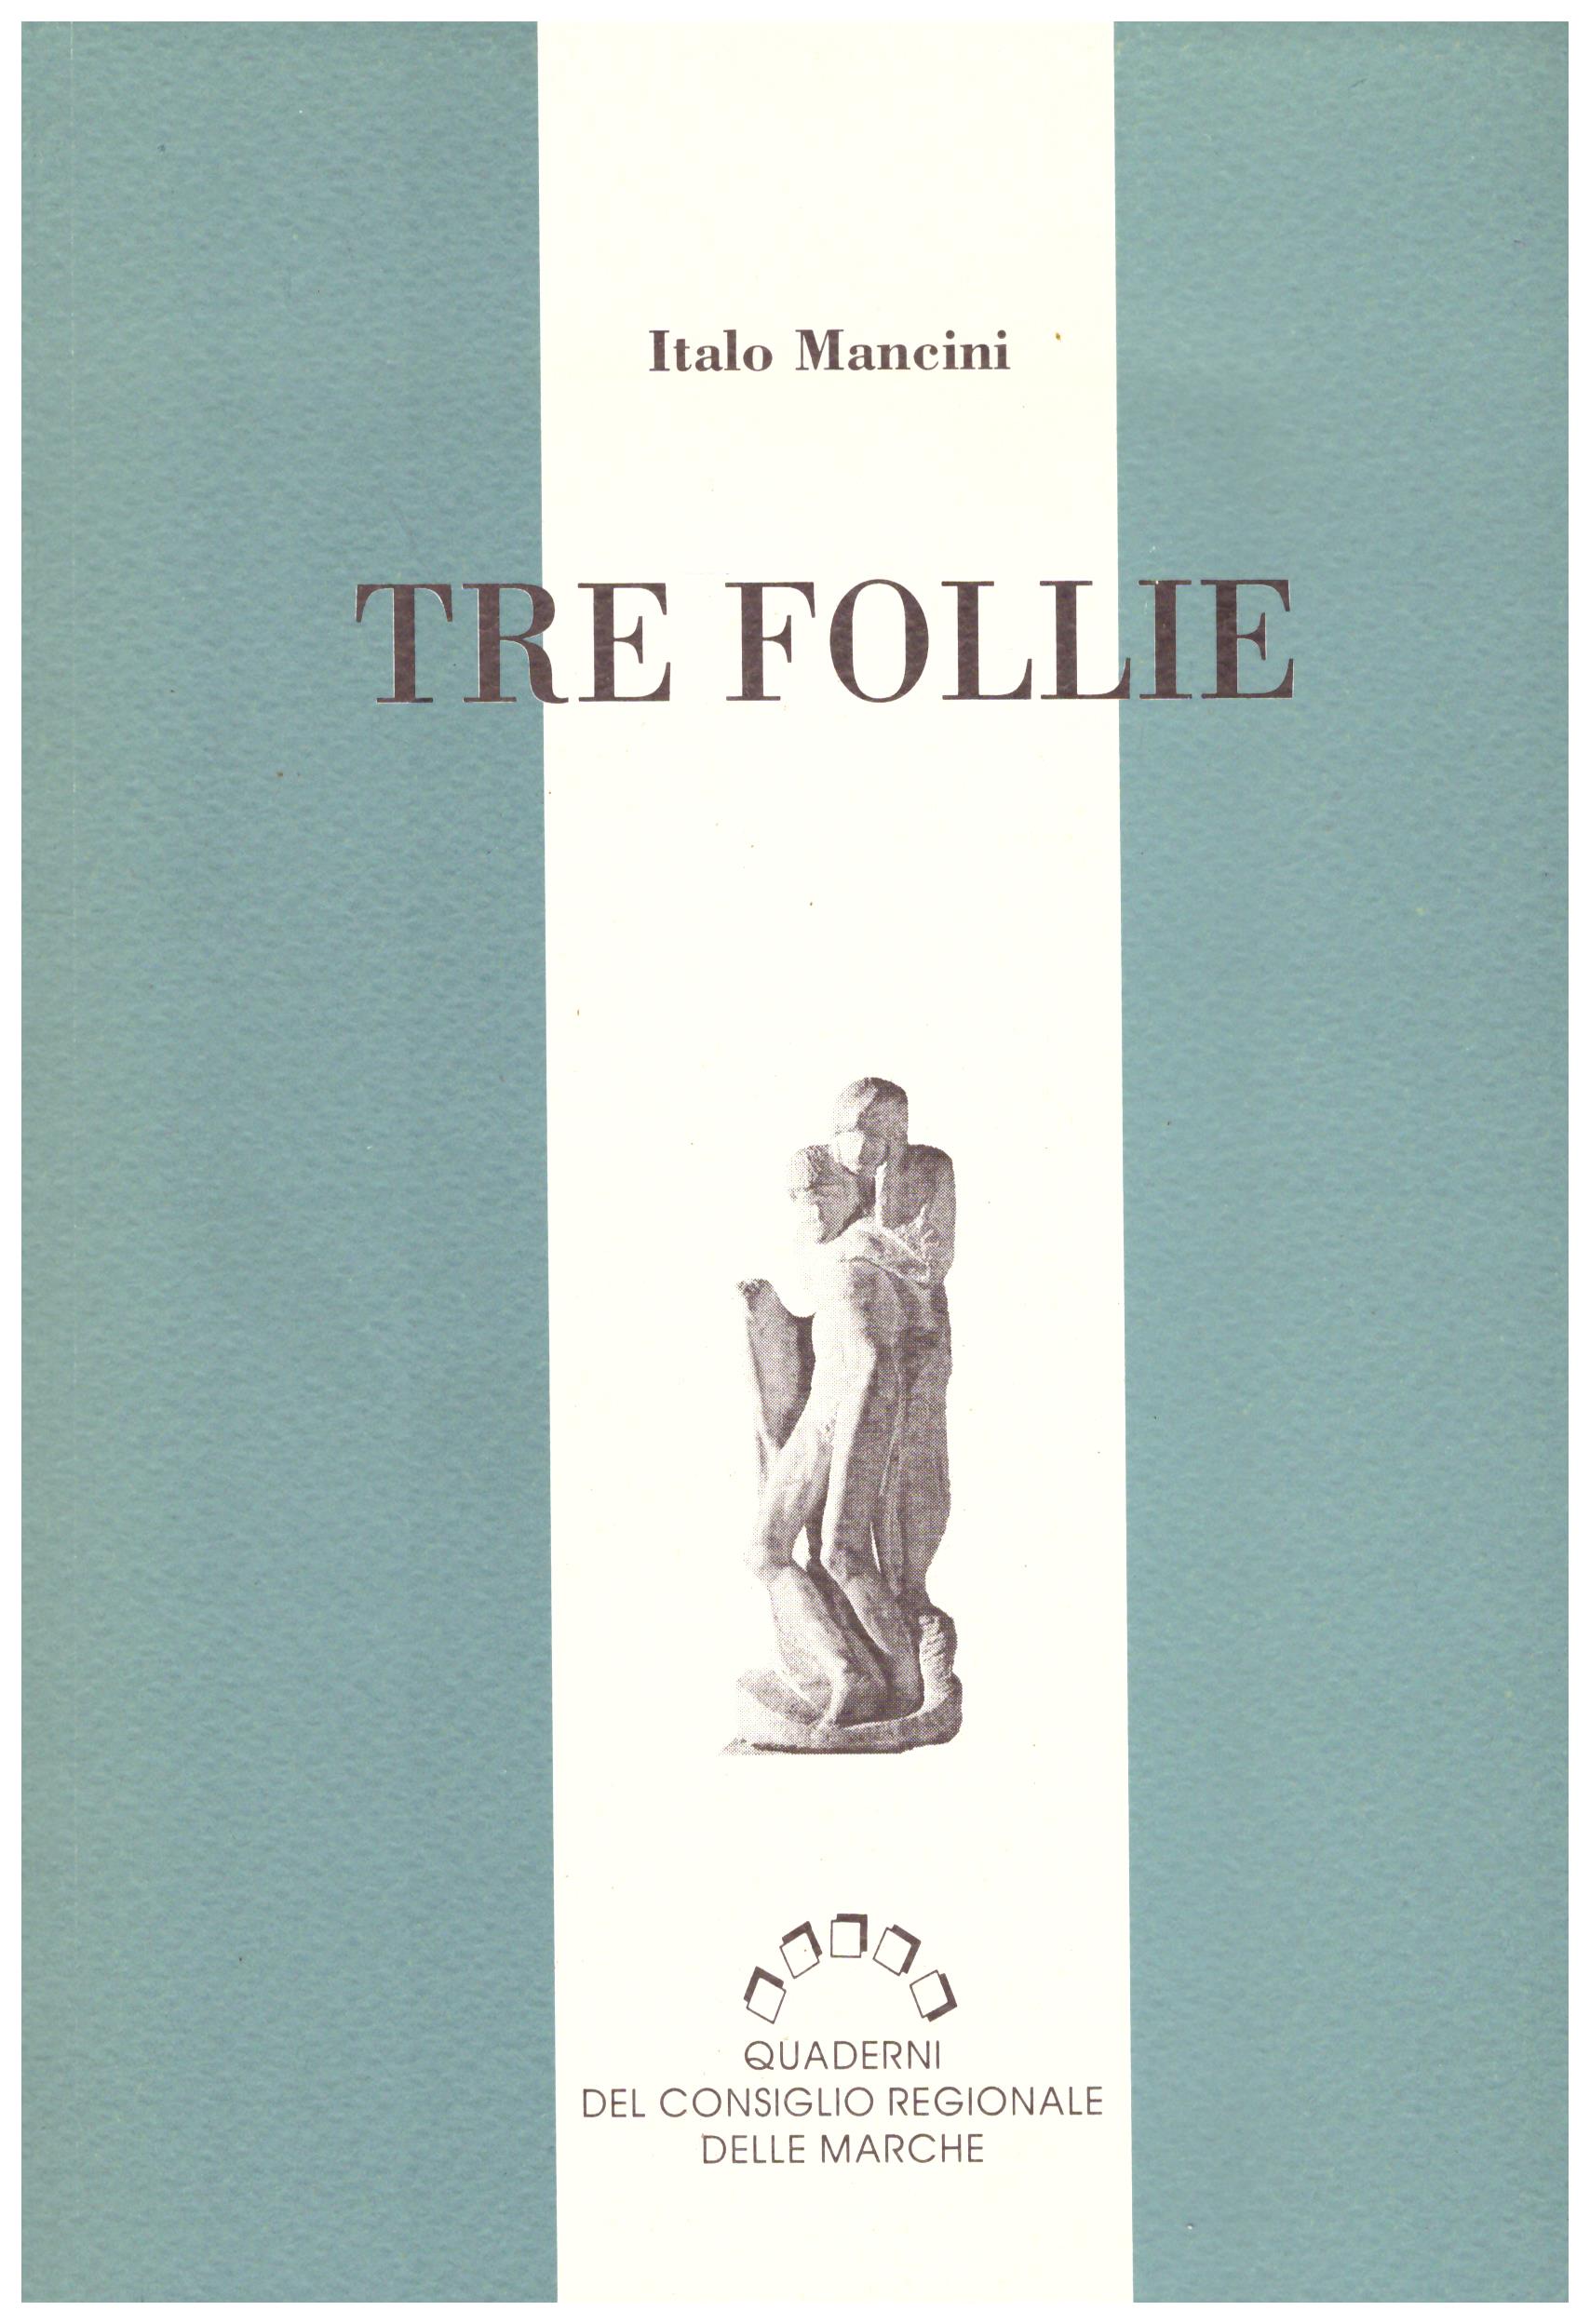 Titolo: Tre follie Autore : Italo Mancini Editore: quaderni del consiglio regionale Marche, 1990